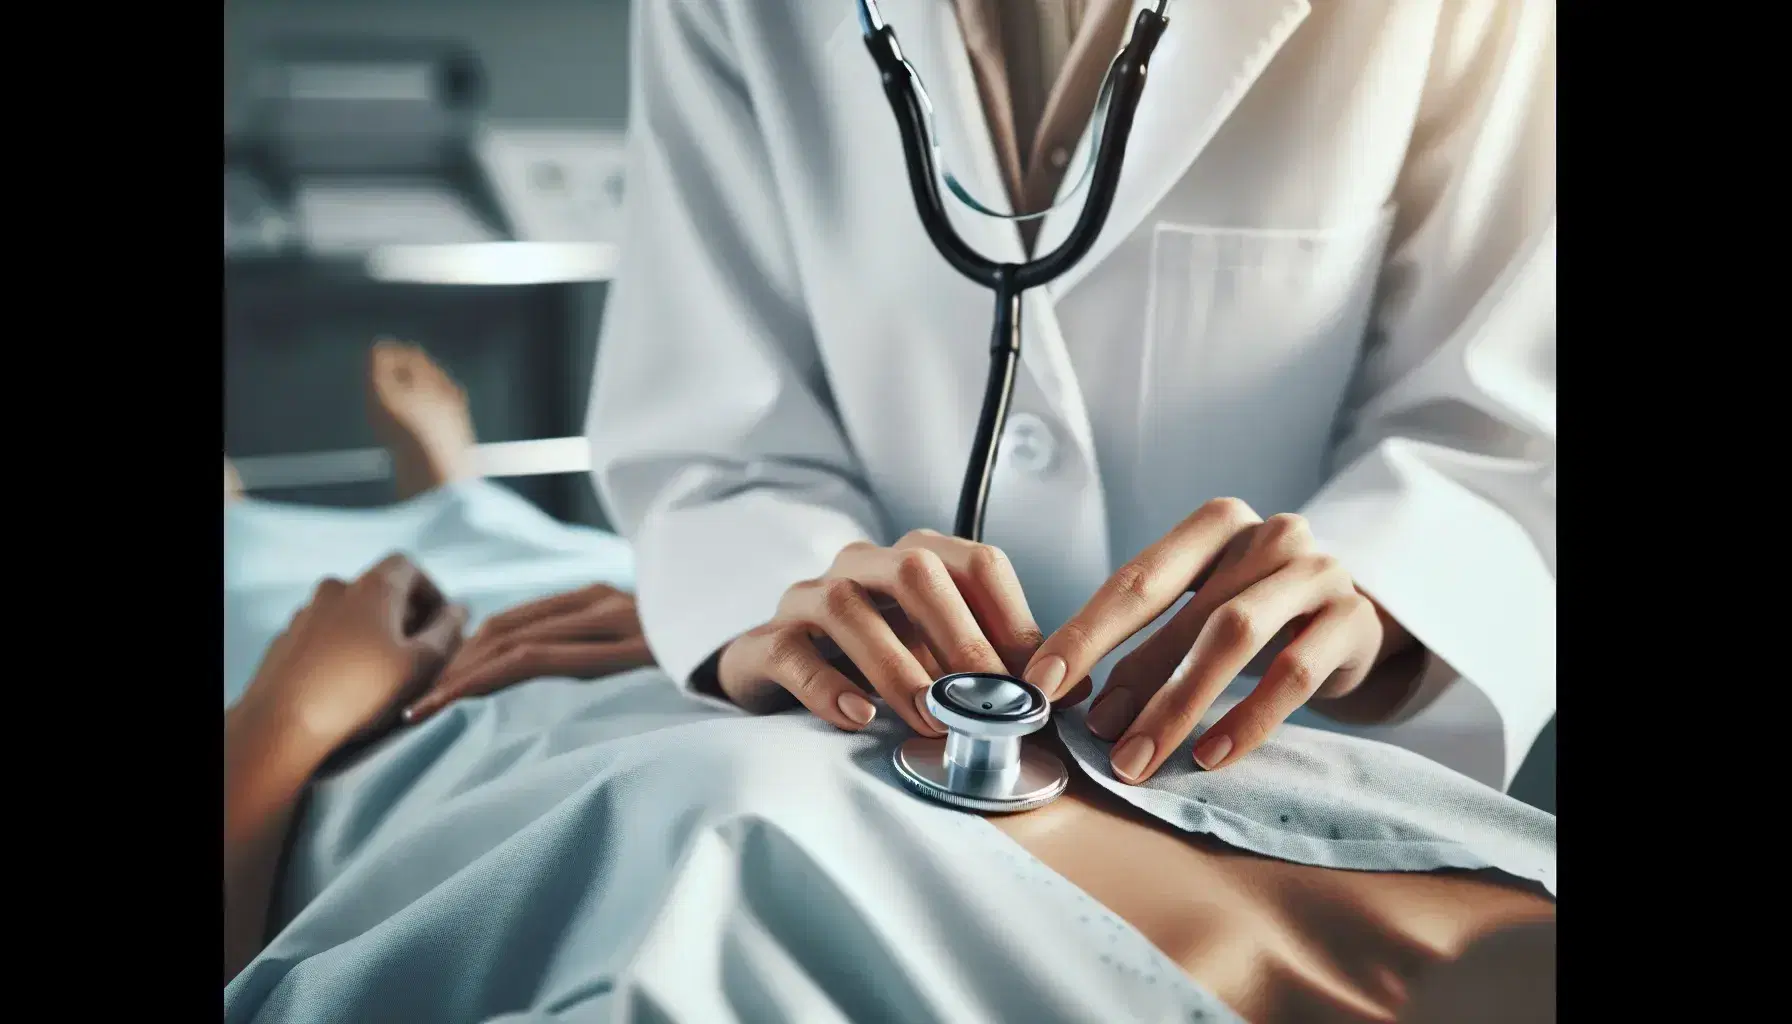 Manos de enfermera con bata blanca usando estetoscopio en pecho de paciente en camilla con bata hospitalaria azul en entorno clínico.